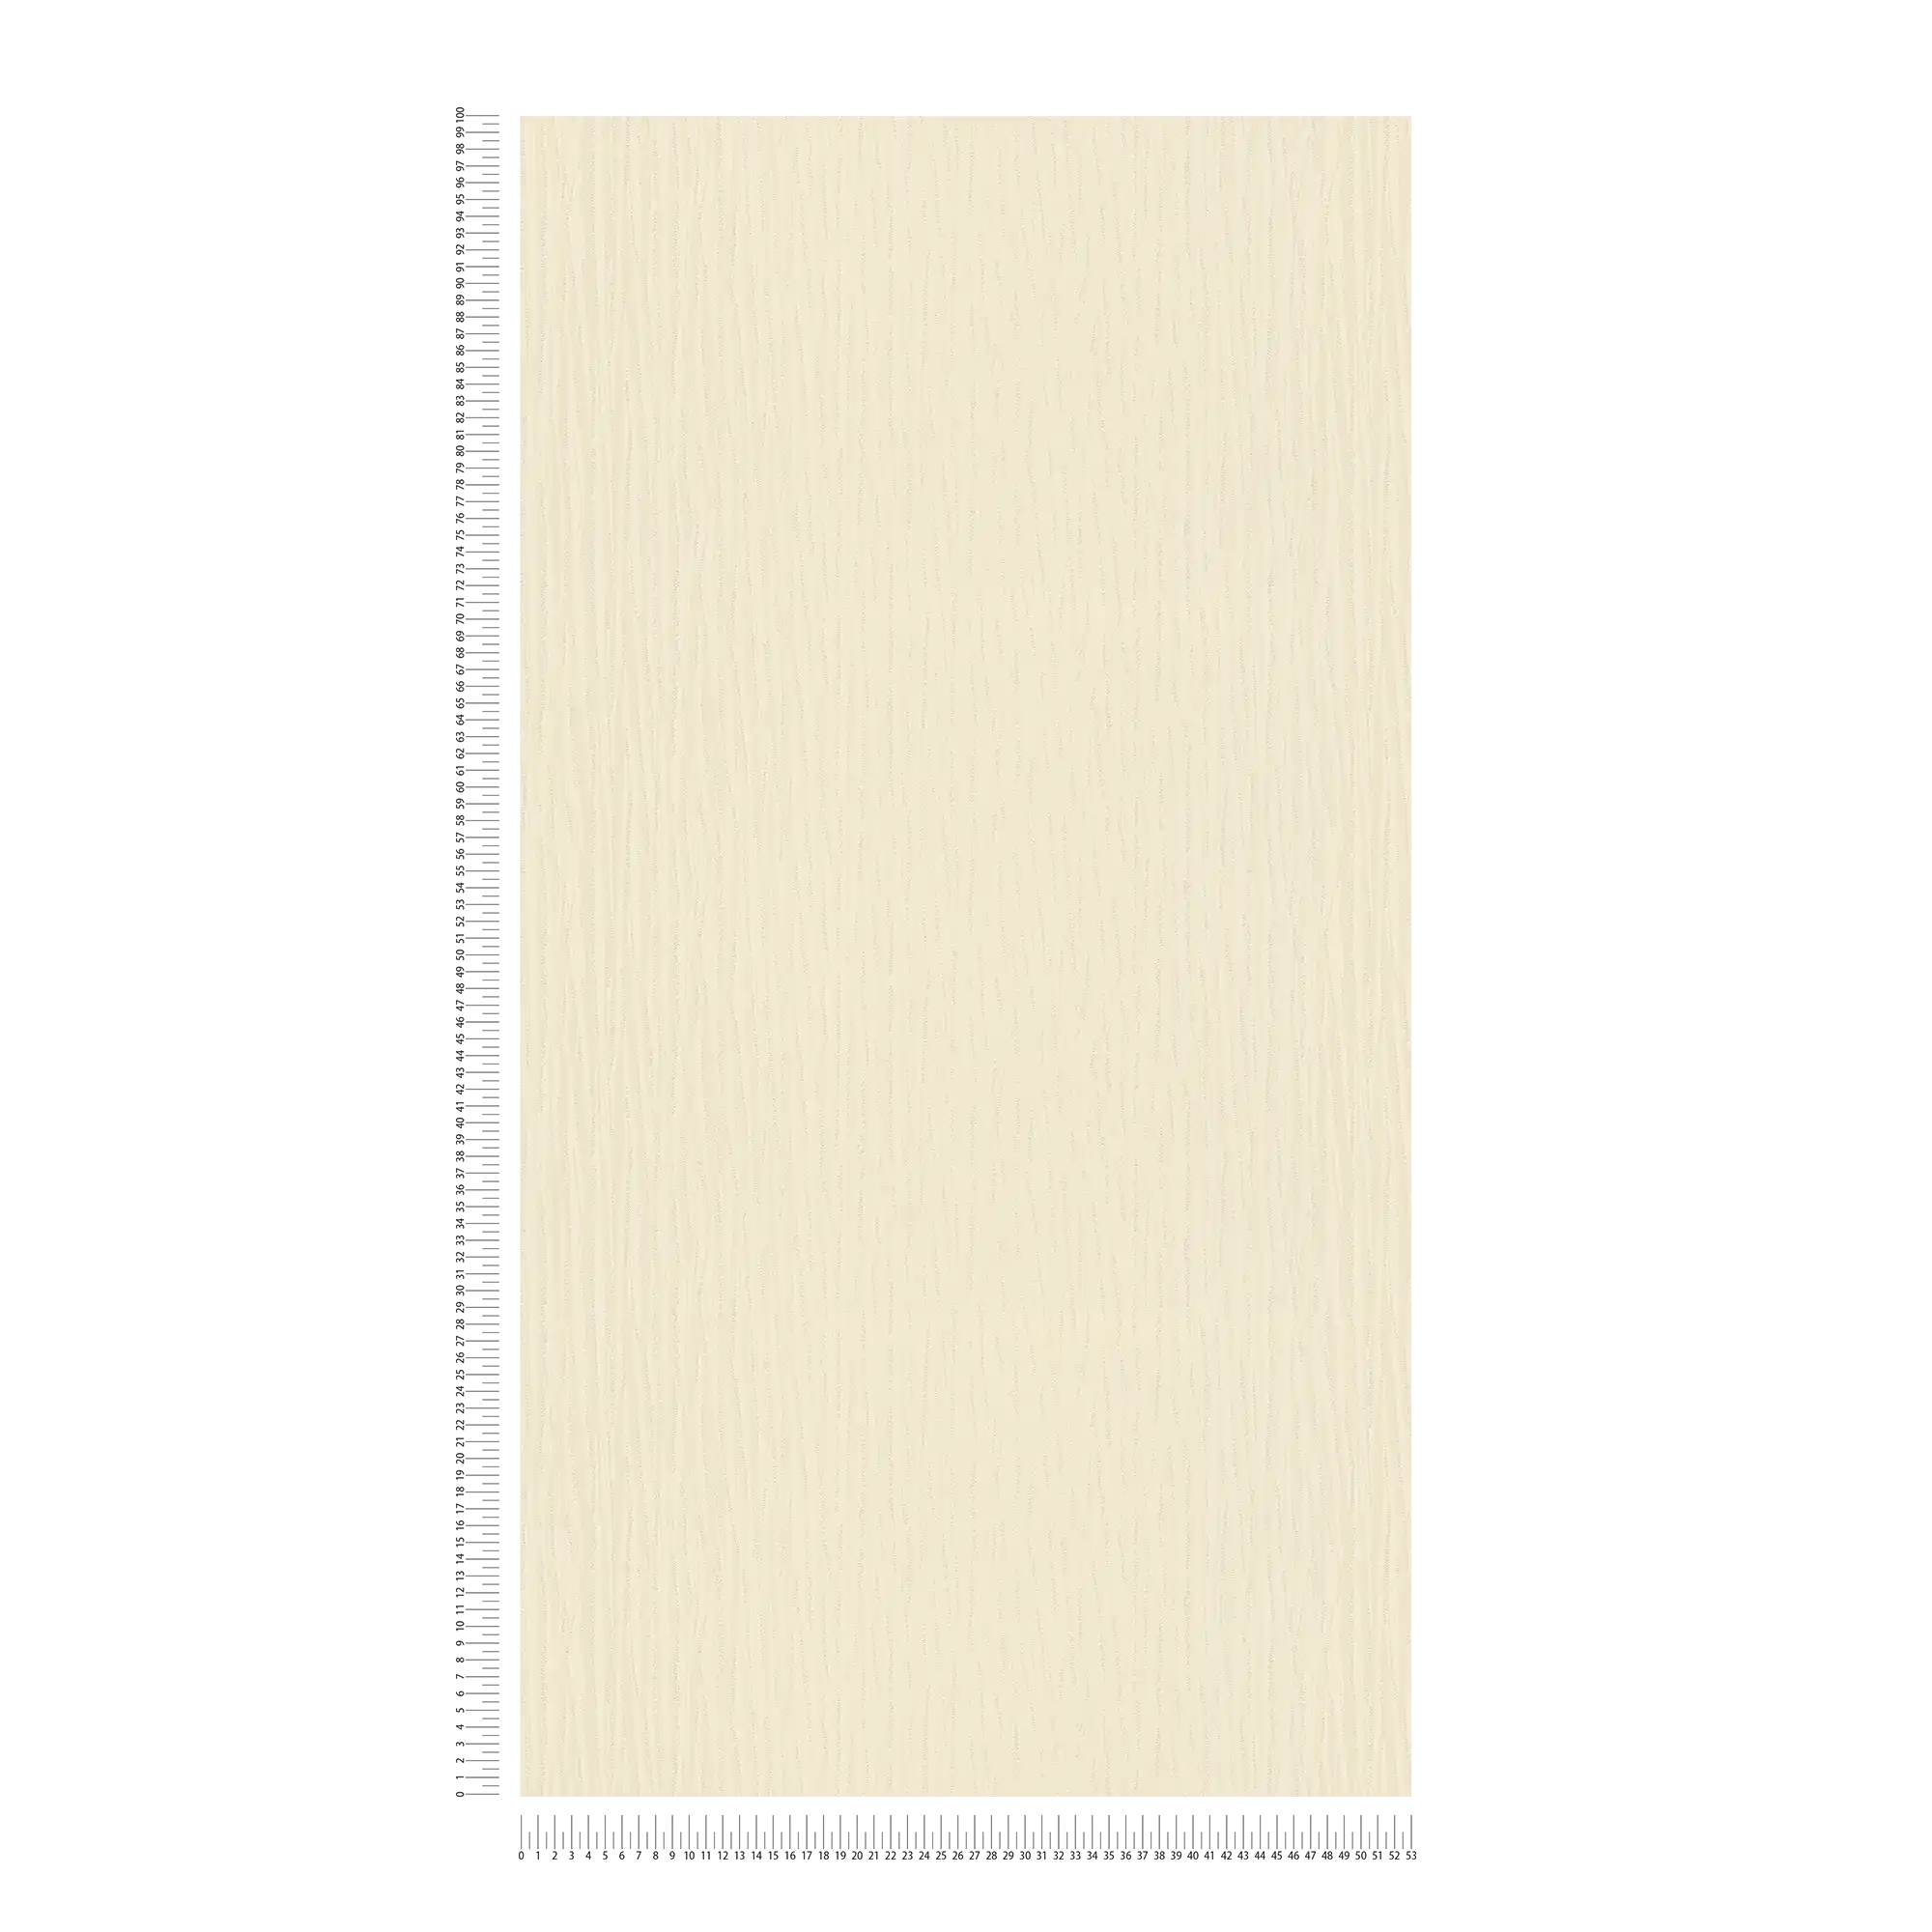             Vliesbehang crème geel met metallic glans & kleurpatroon
        